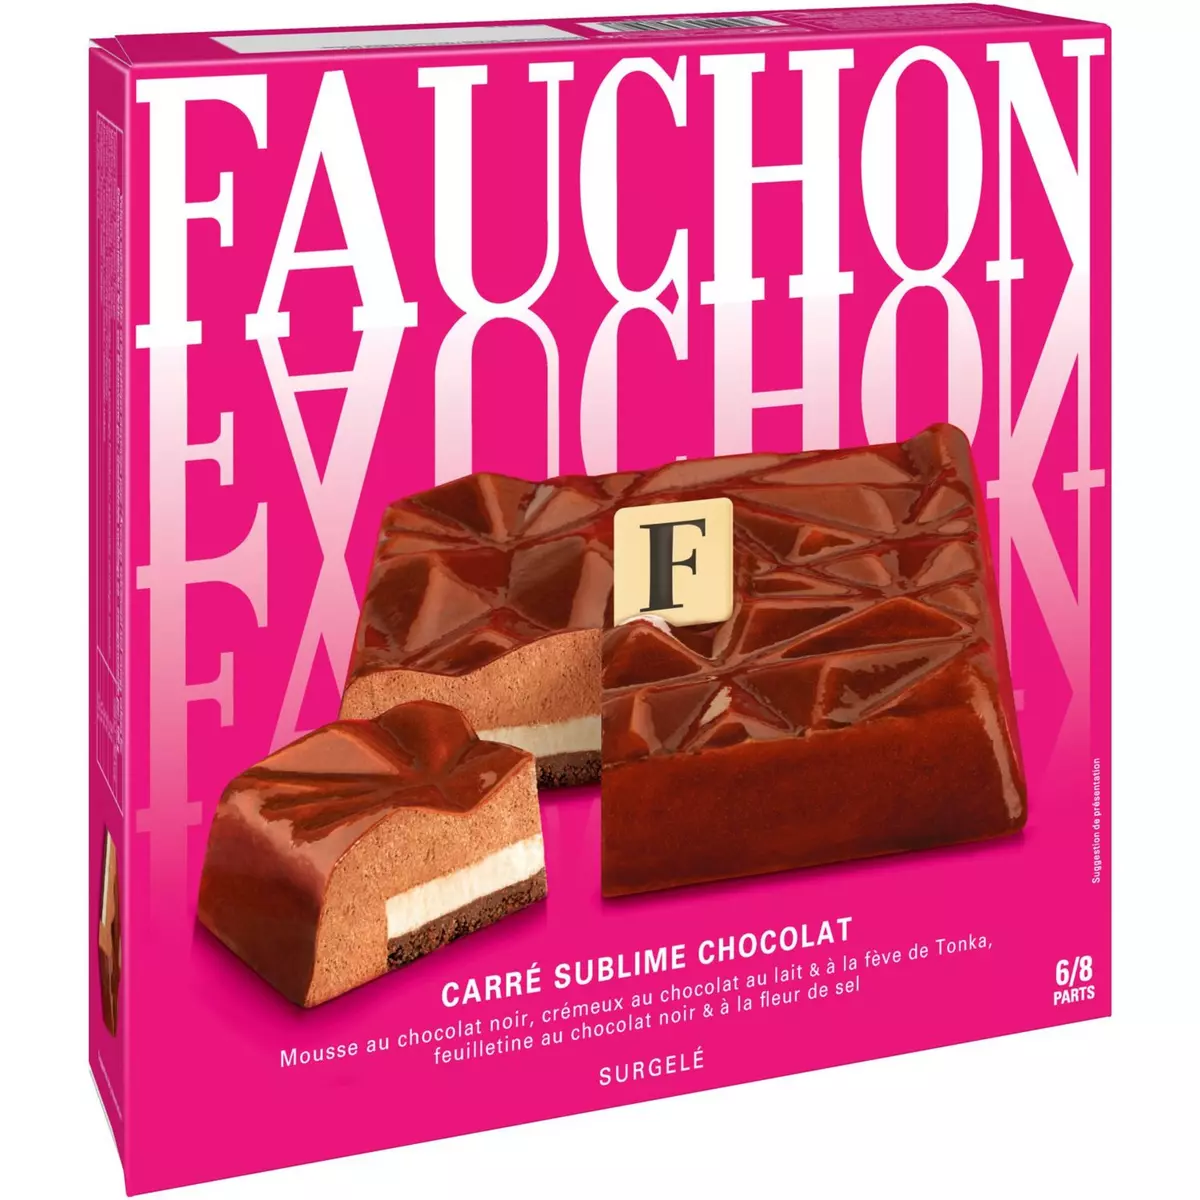 FAUCHON Mousse Carré sublime au chocolat 6-8 parts 445g